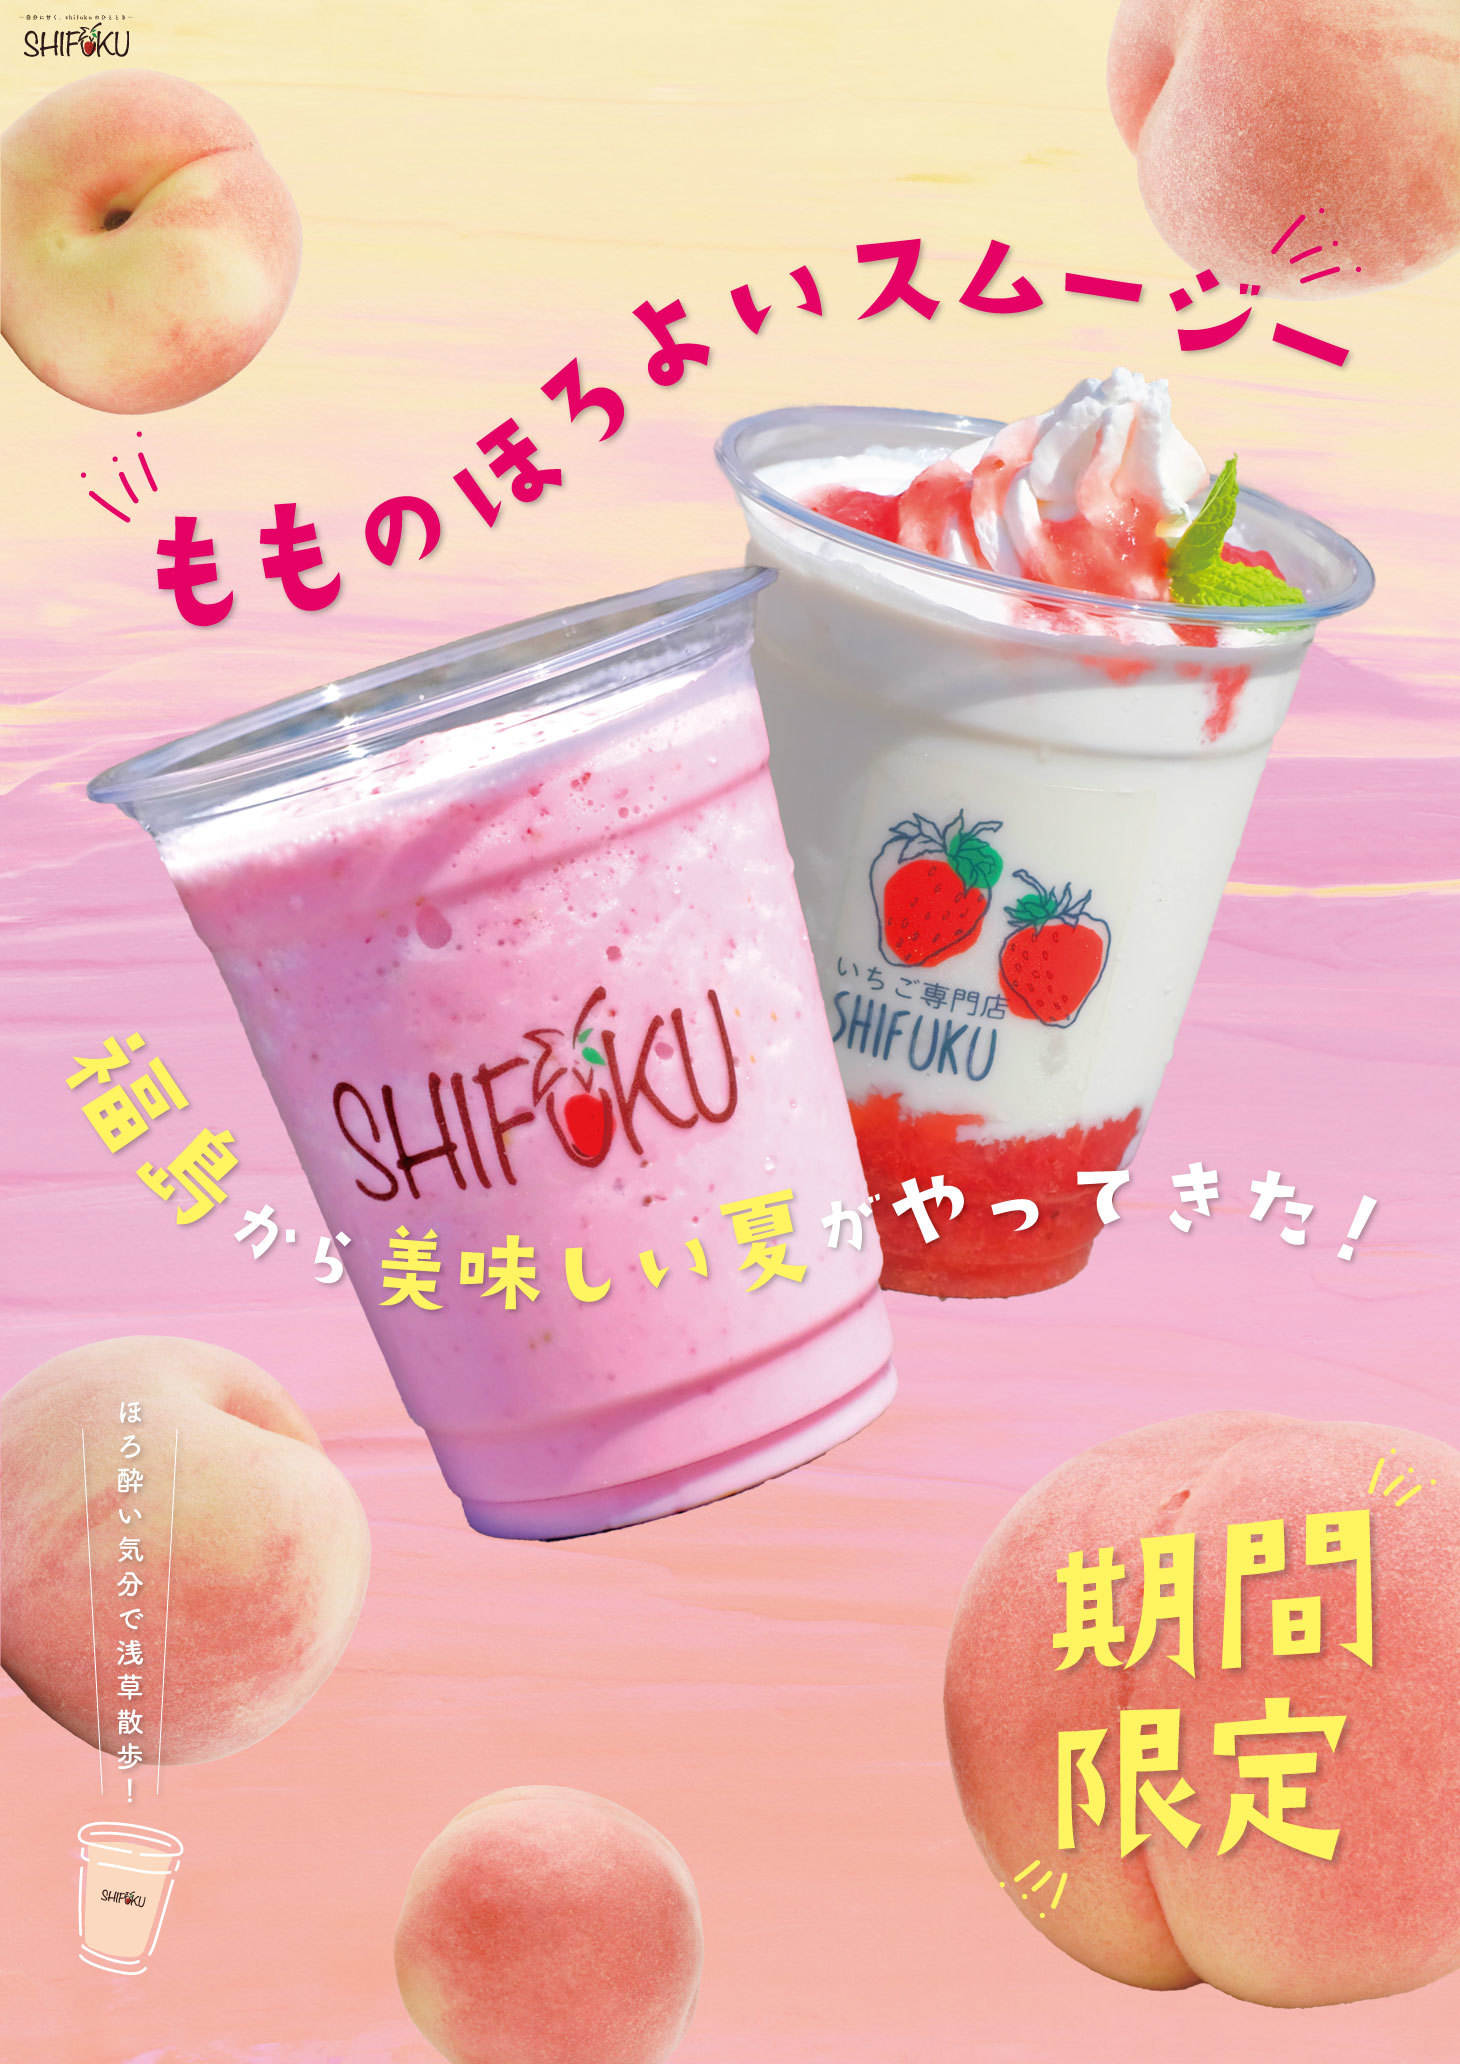 福島の旬を浅草で世界に発信！
福島県産フルーツ専門店「SHIFUKU」をオープン！